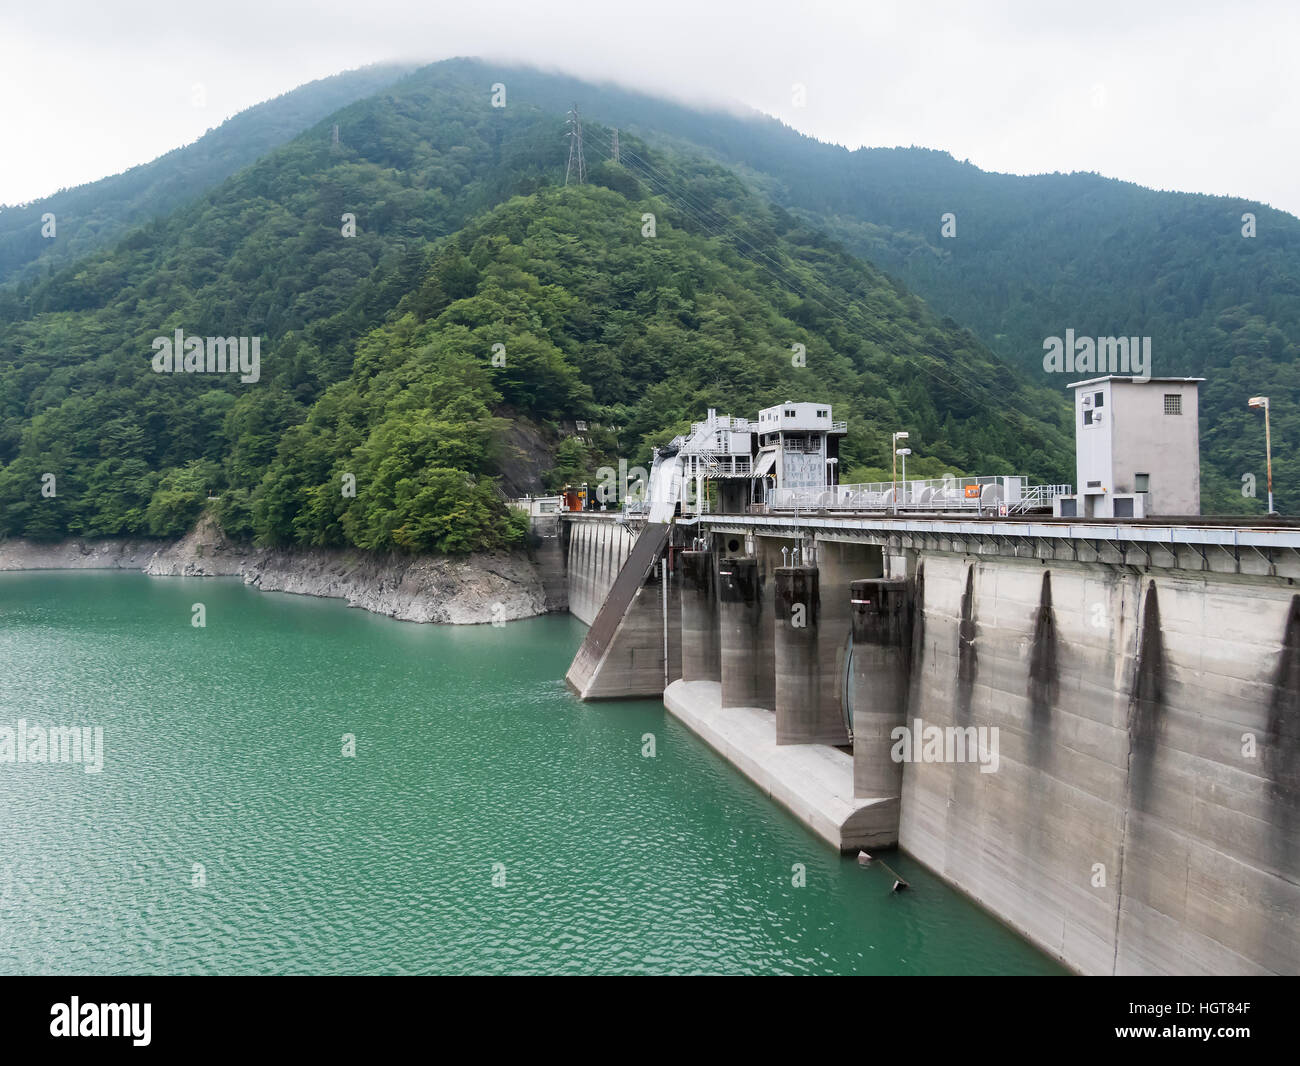 Landscape of Ikawa Dam (Ikawa Hydro Power Plant) in Shizuoka, Japan. Stock Photo